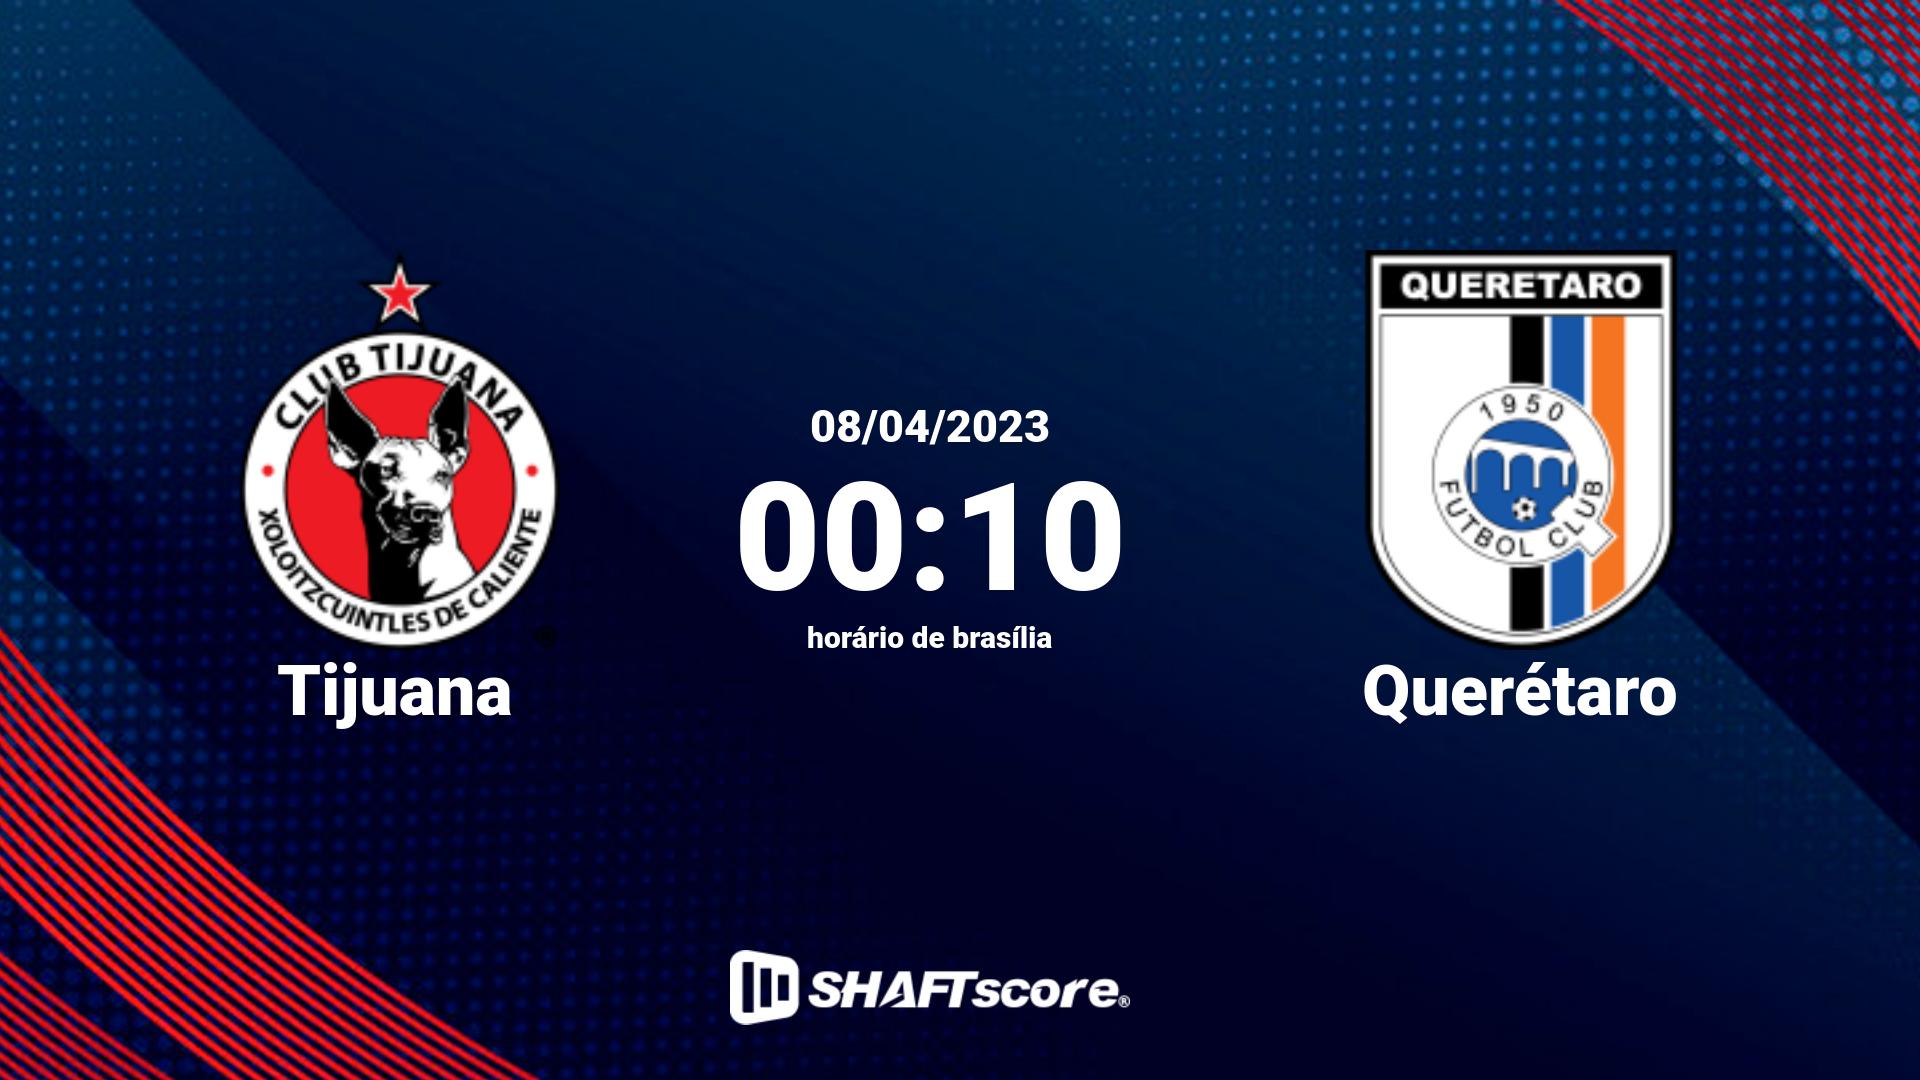 Estatísticas do jogo Tijuana vs Querétaro 08.04 00:10